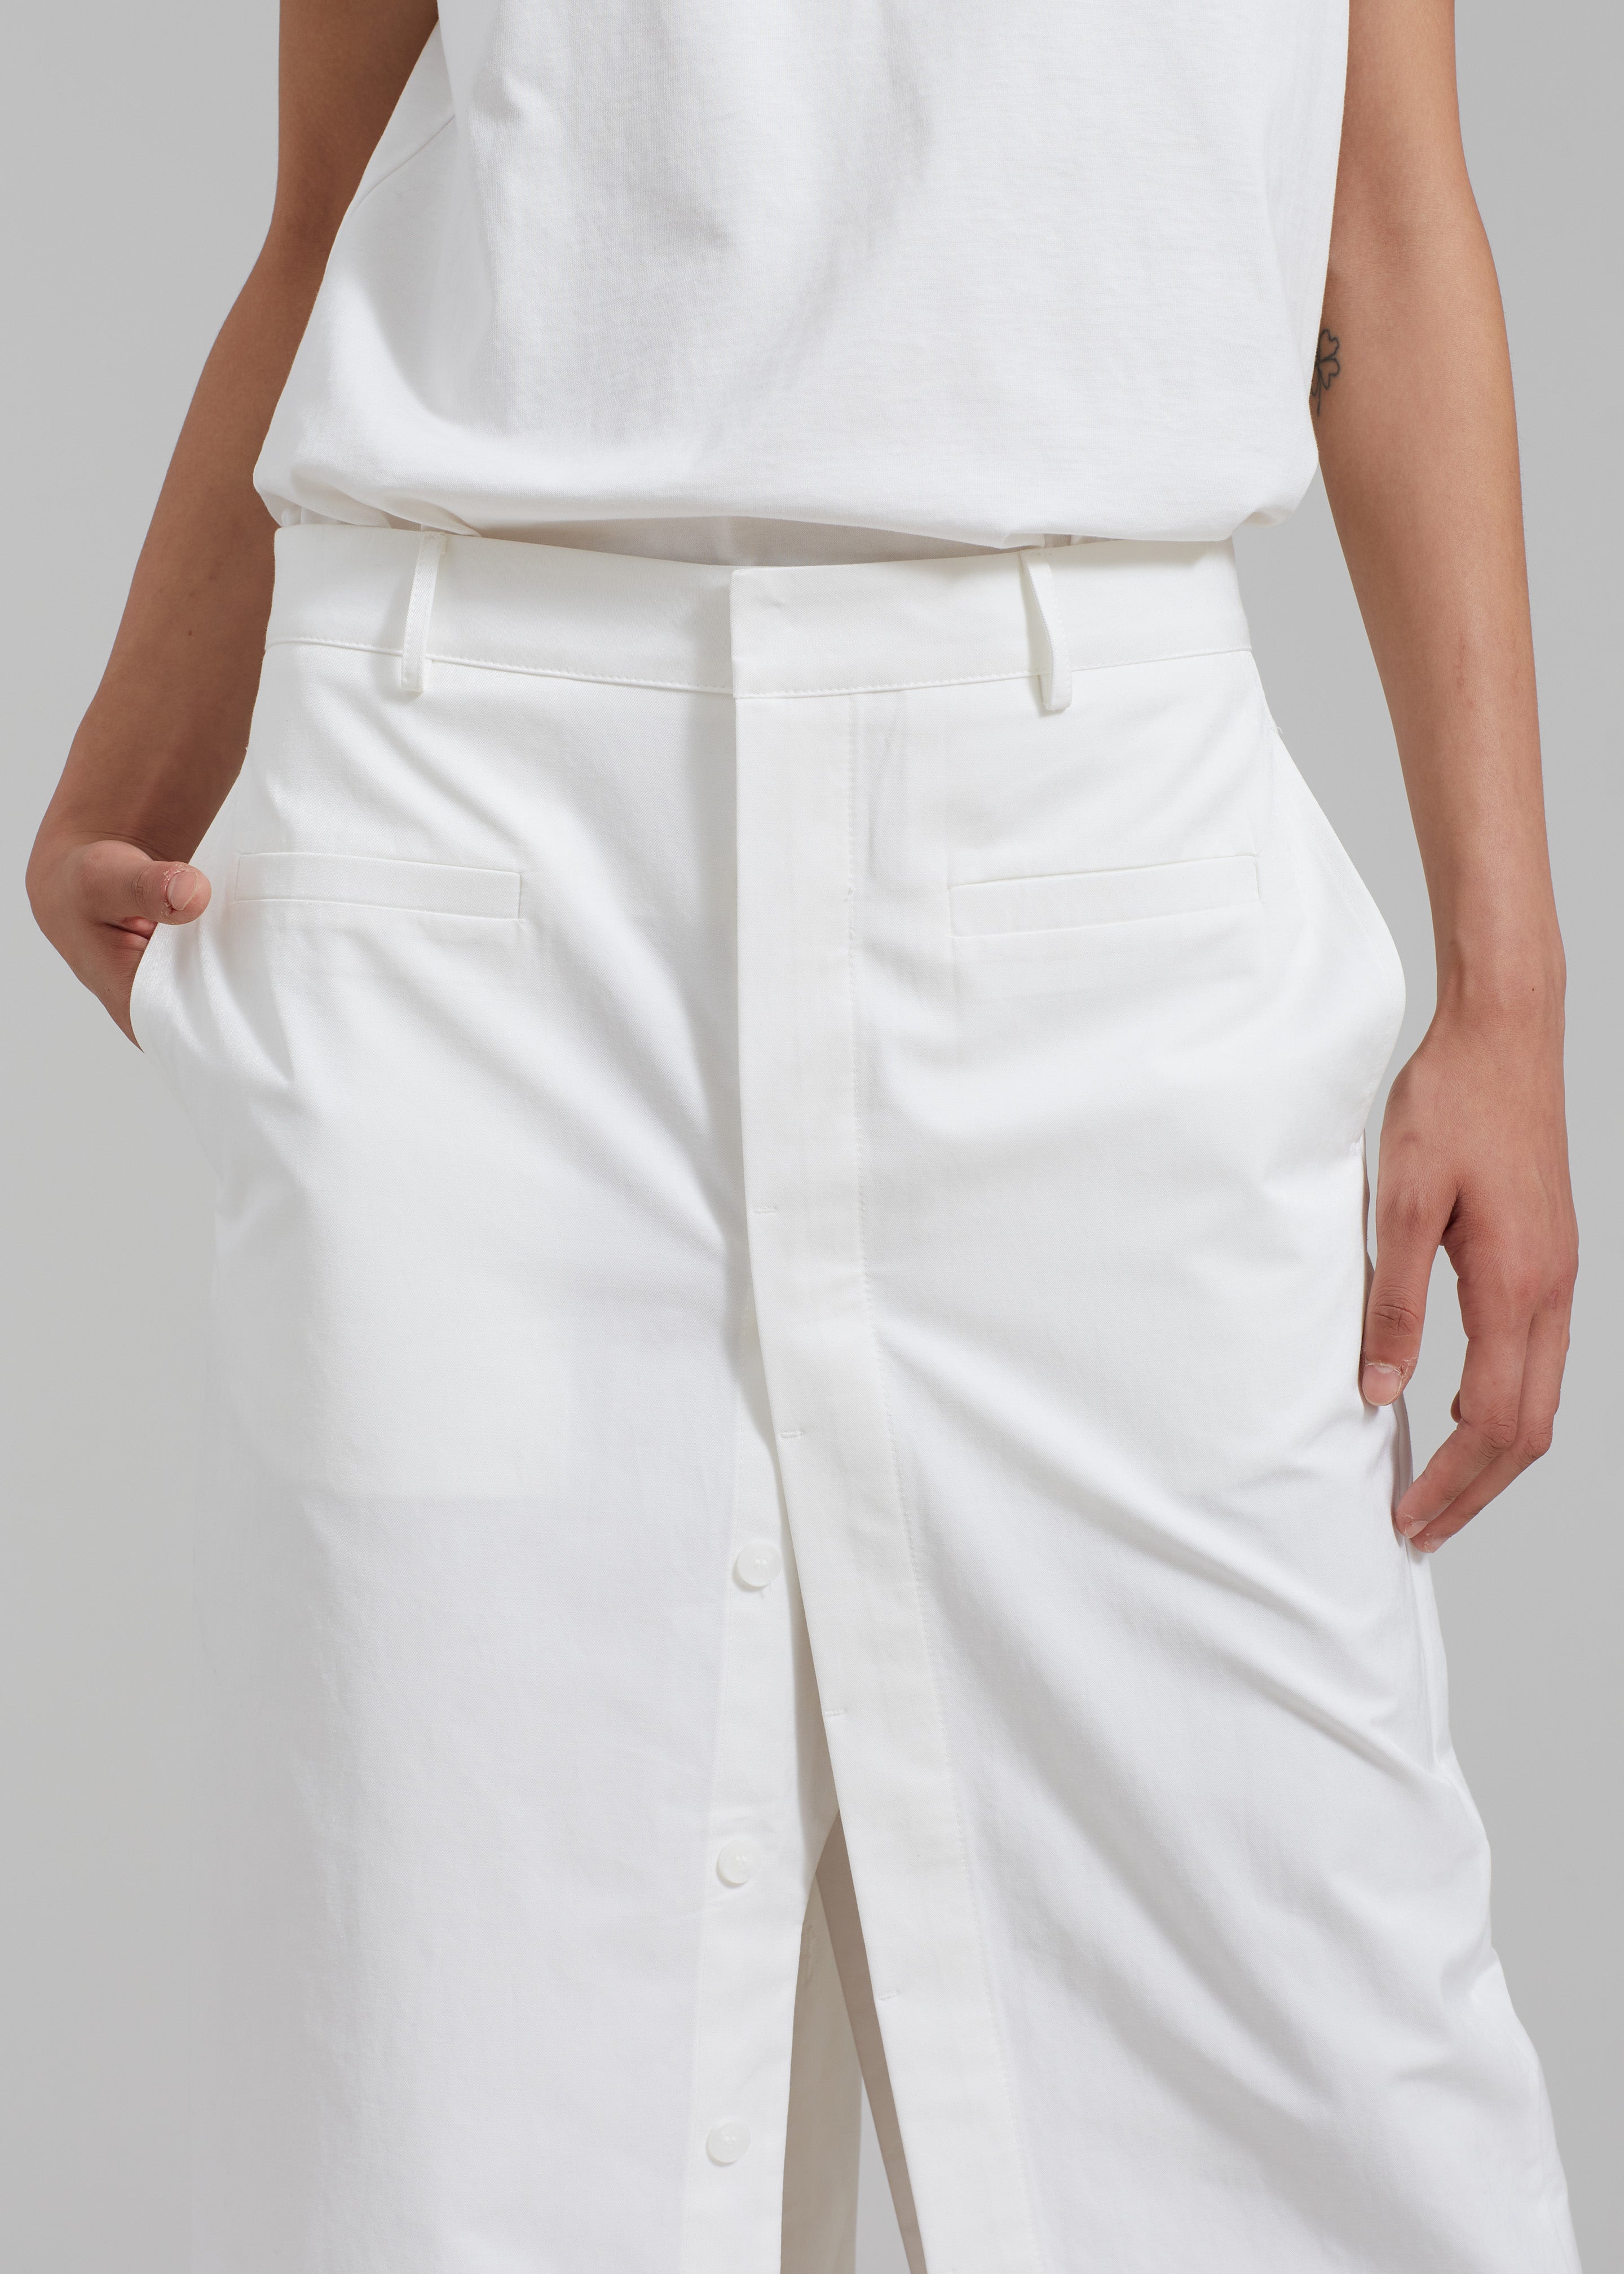 Norah Slit Midi Skirt - White - 7